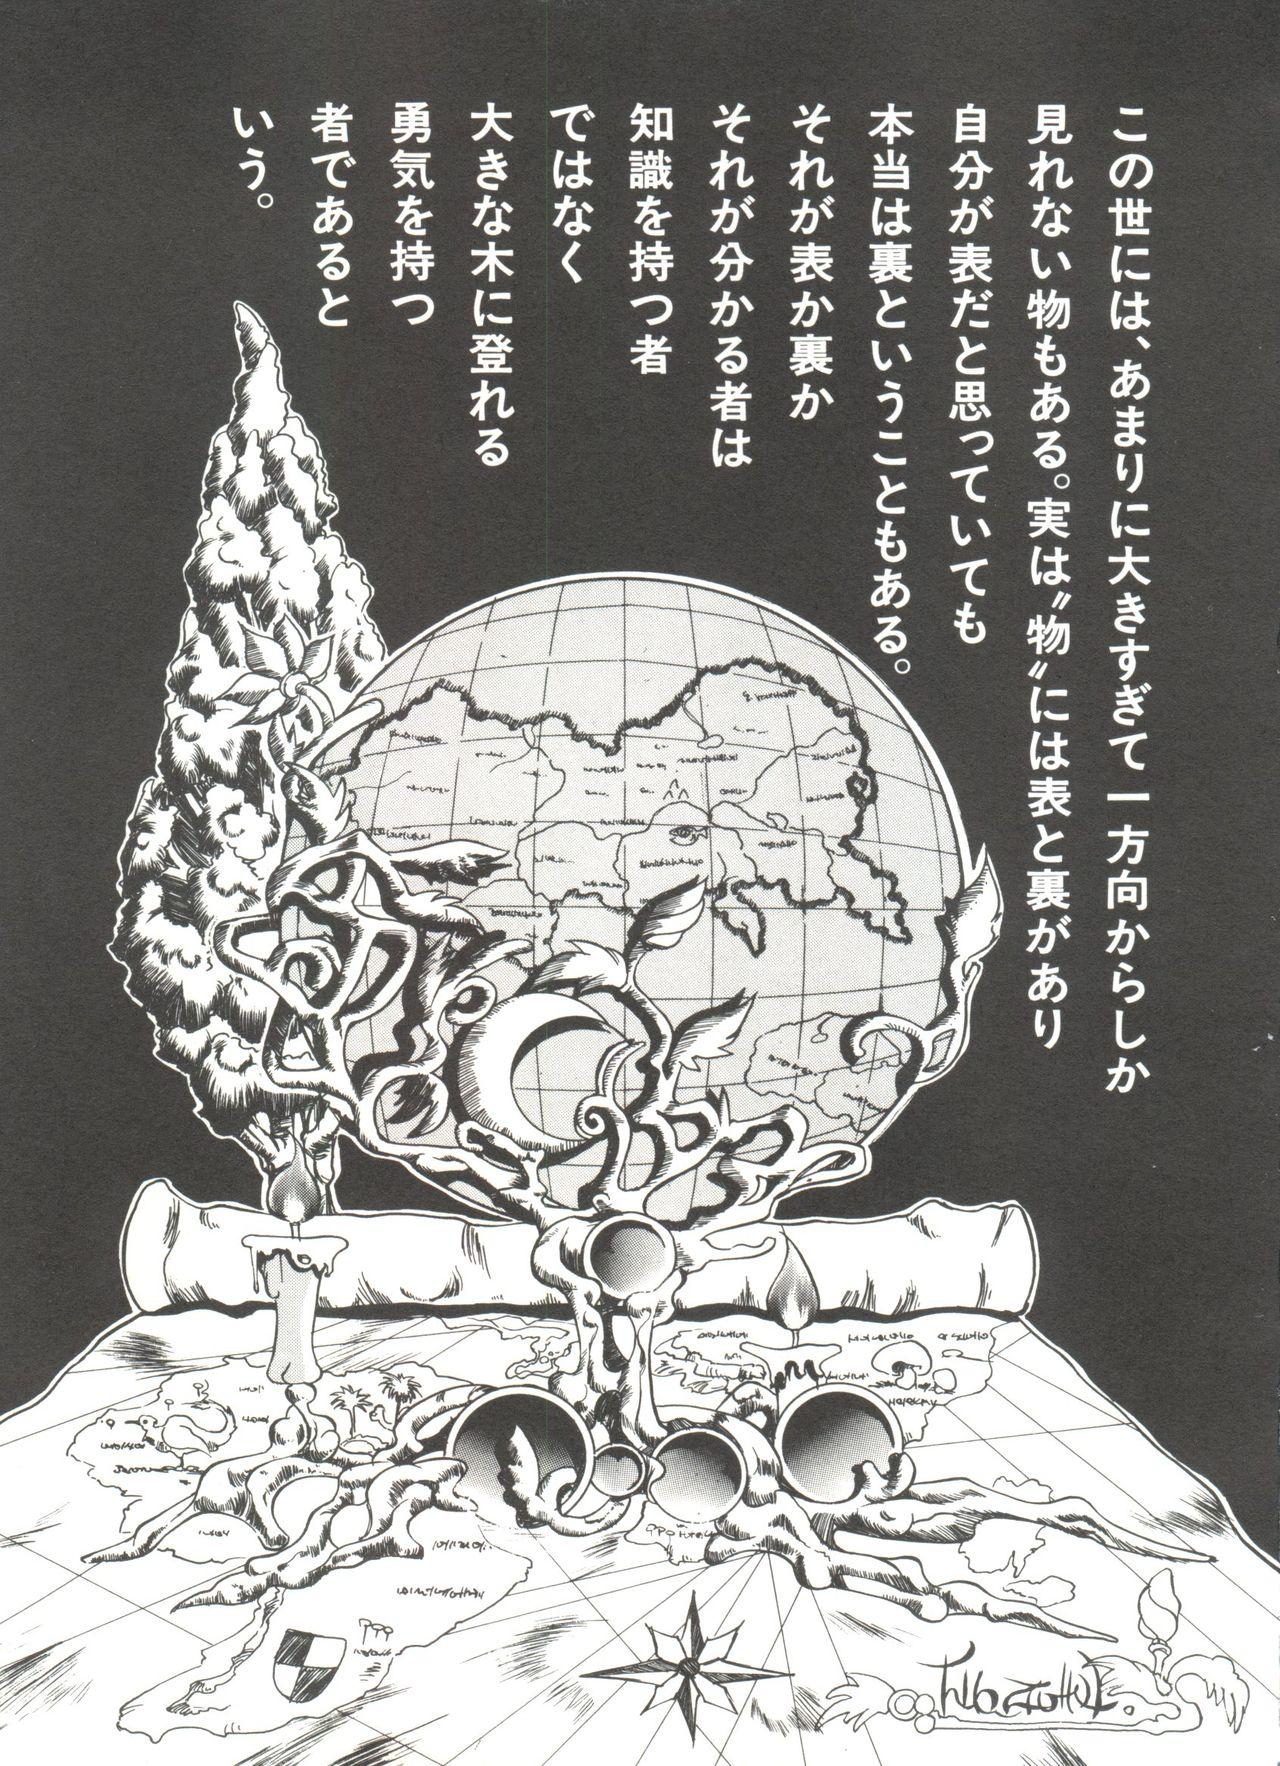 Bishoujo Doujinshi Anthology 9 98